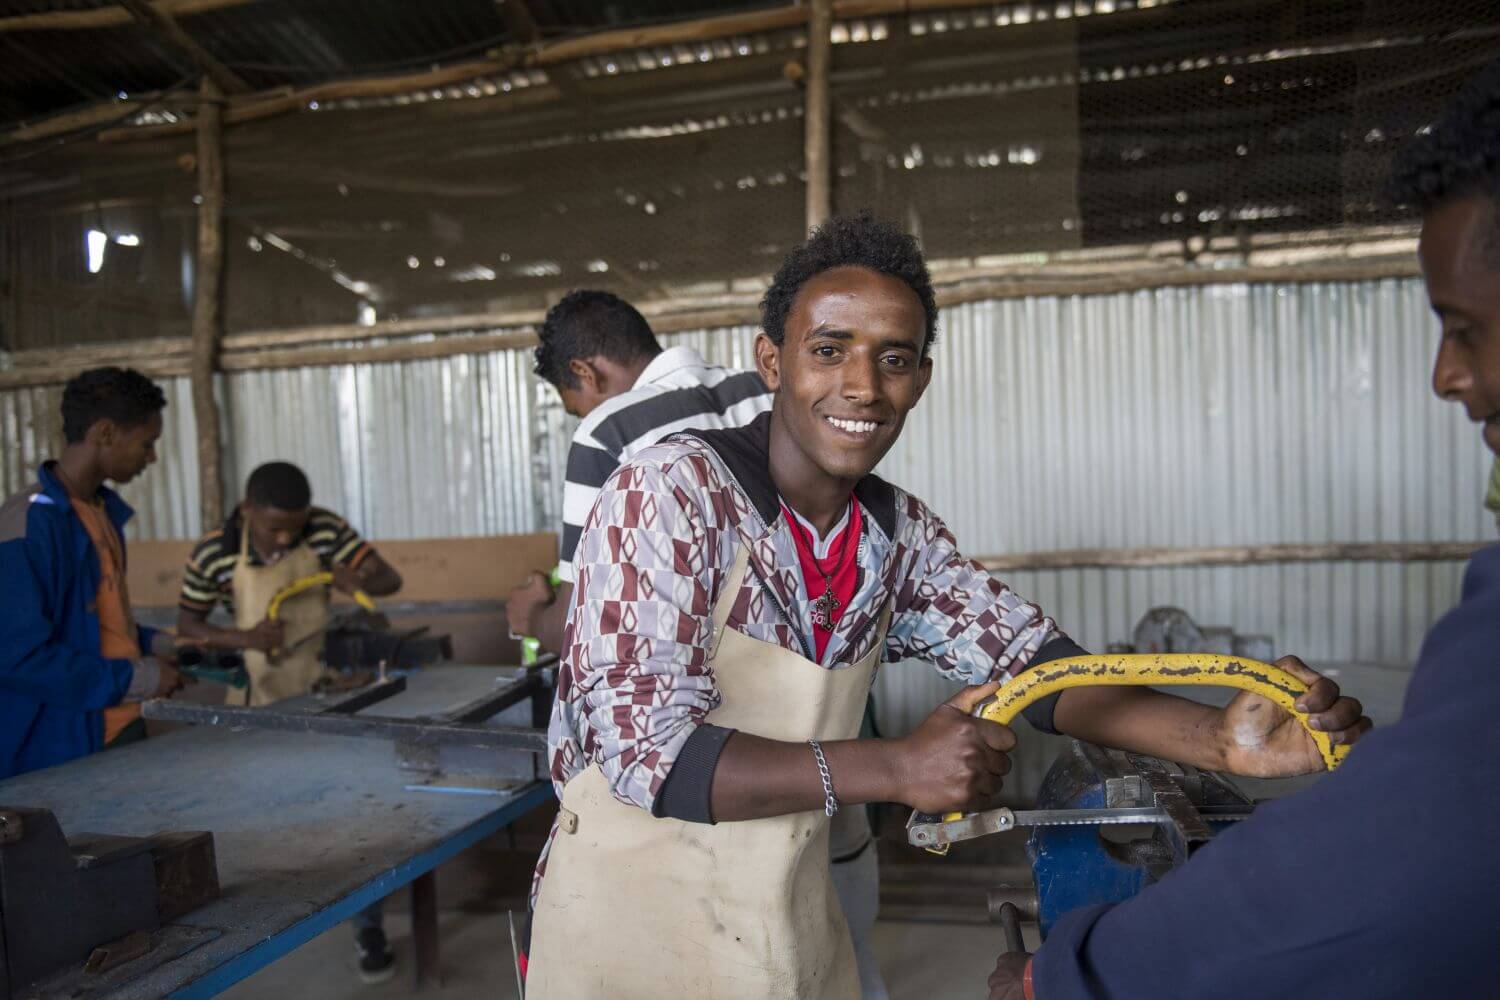 Jugendlicher in Ausbildung bei der praktischen Arbeit, Äthiopien